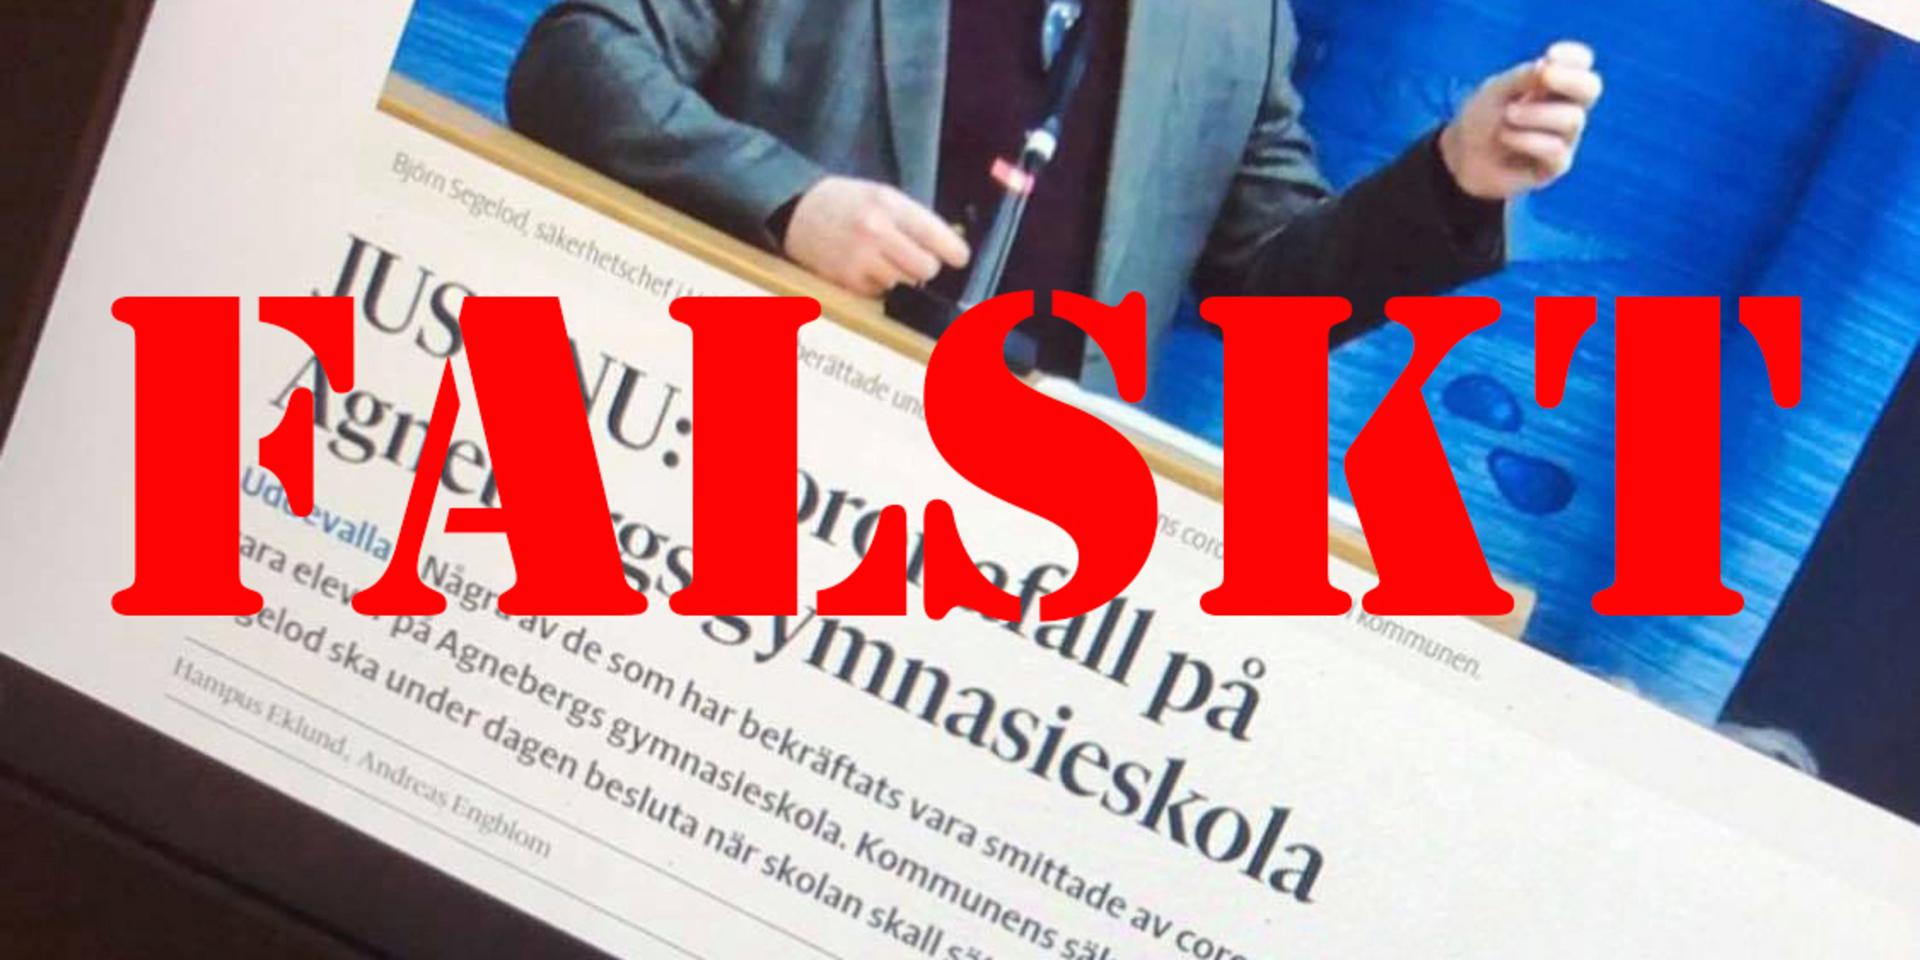 Artikeln ser ut att vara publicerad på bohuslaningen.se, men är helt falsk. Bilden med felaktiga uppgifter sprids nu i sociala medier. 